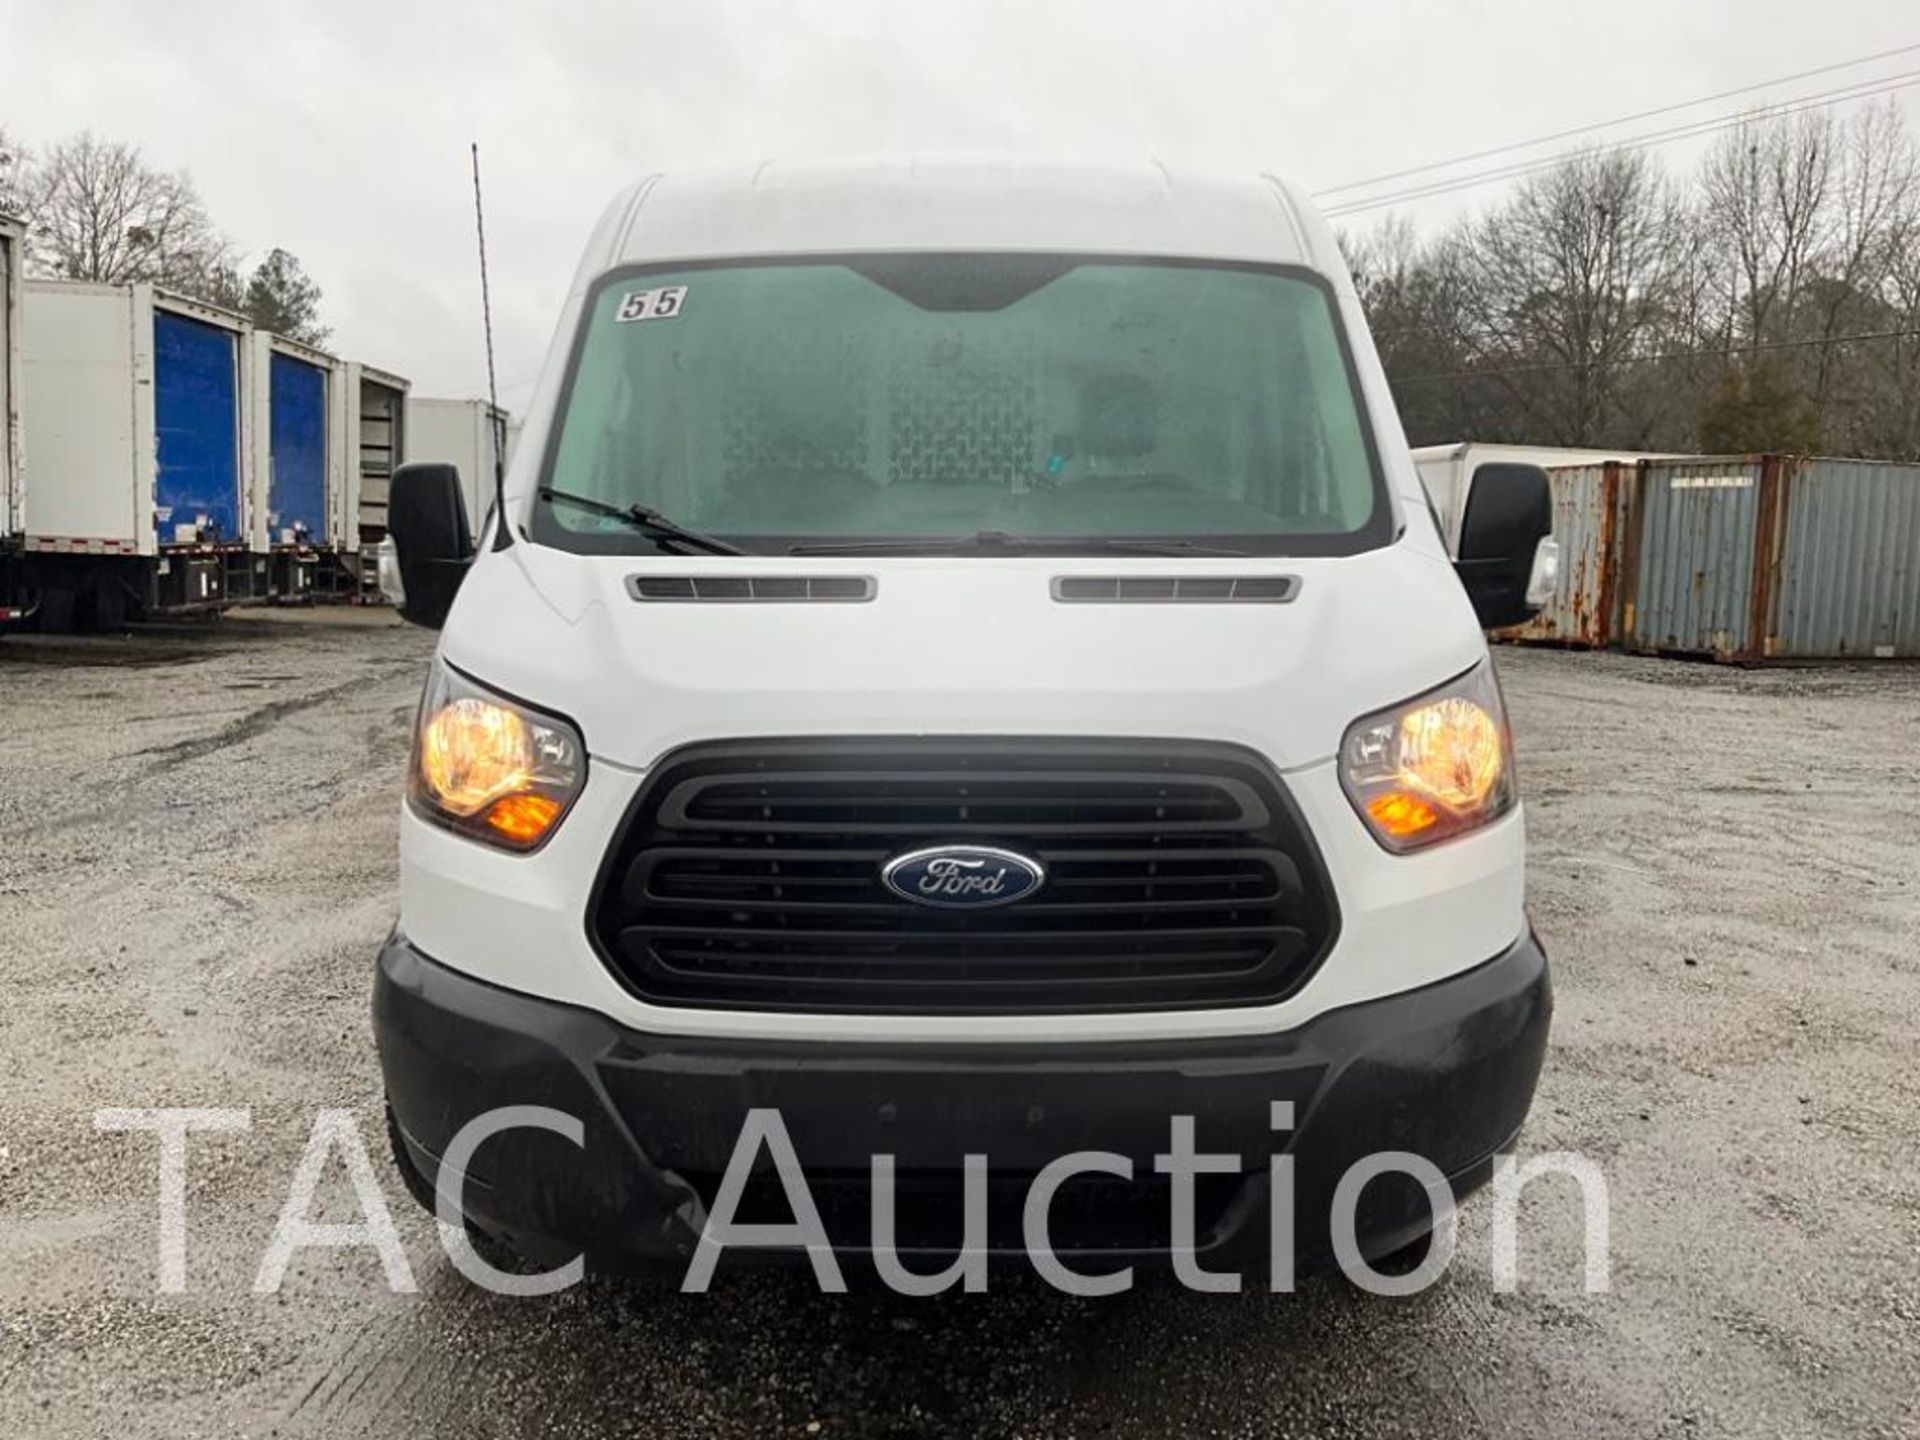 2019 Ford Transit 150 Cargo Van - Image 8 of 50